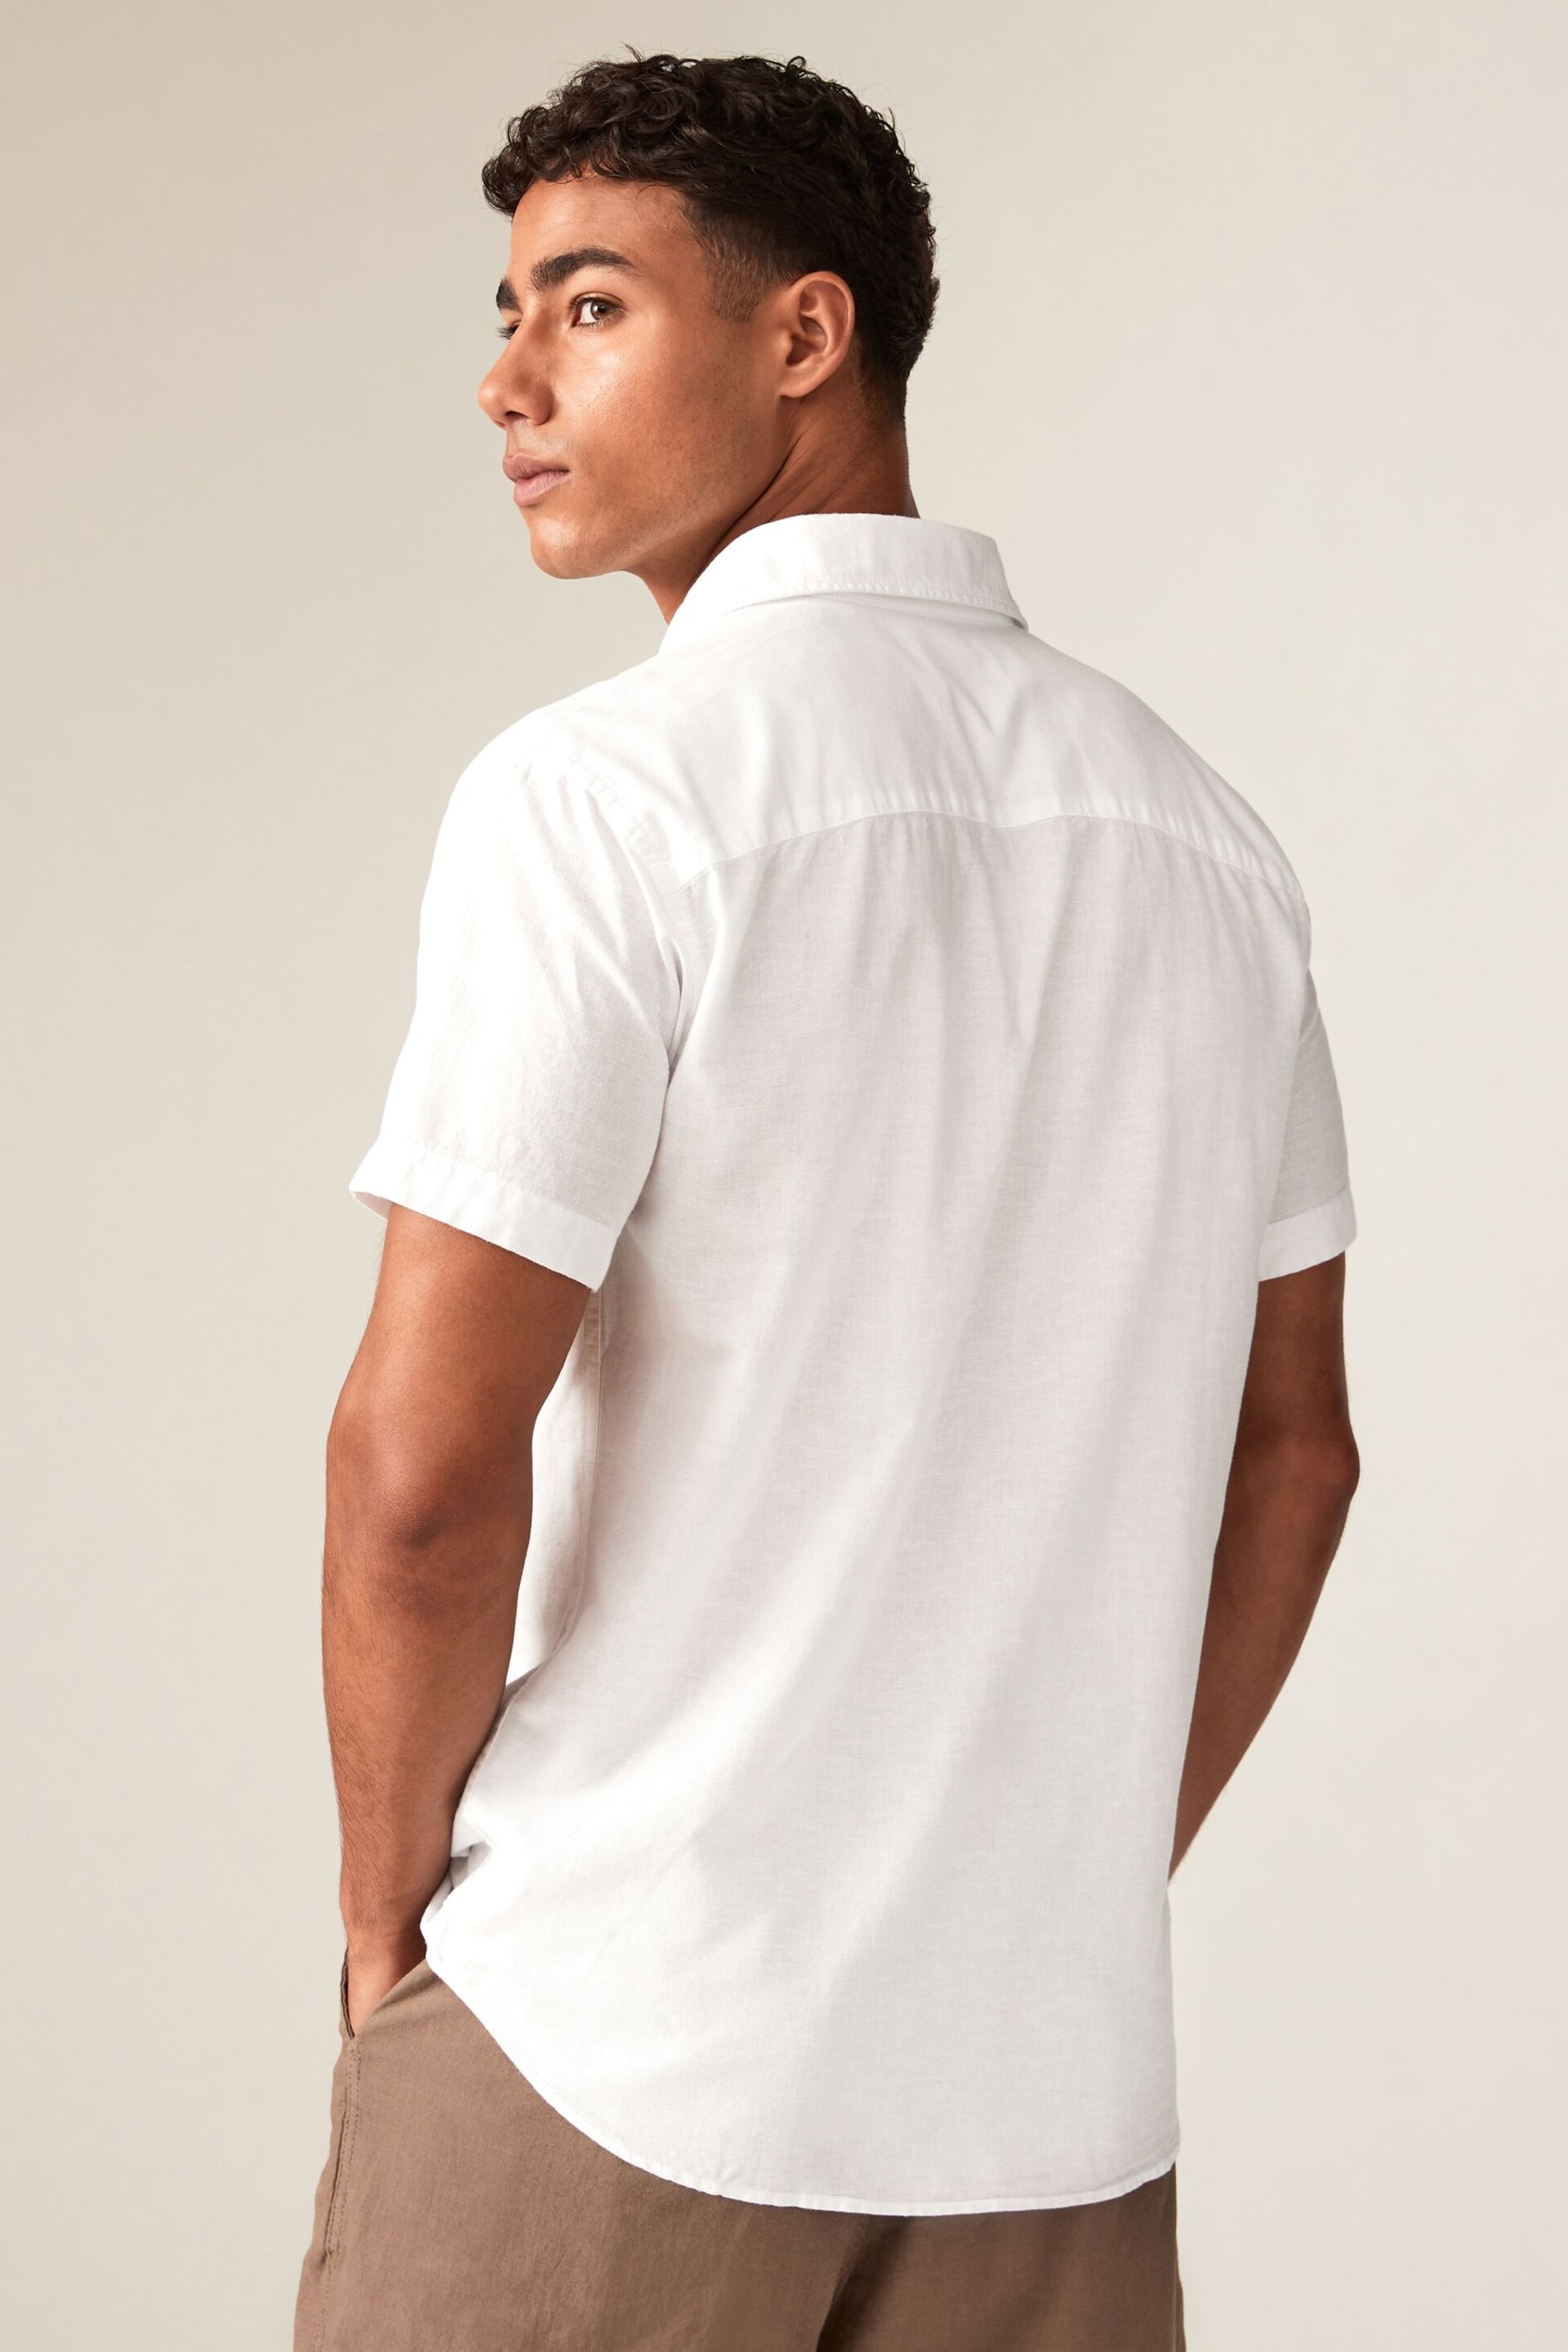 JACK & JONES White Linen Blend Short Sleeve Shirt - Image 2 of 10